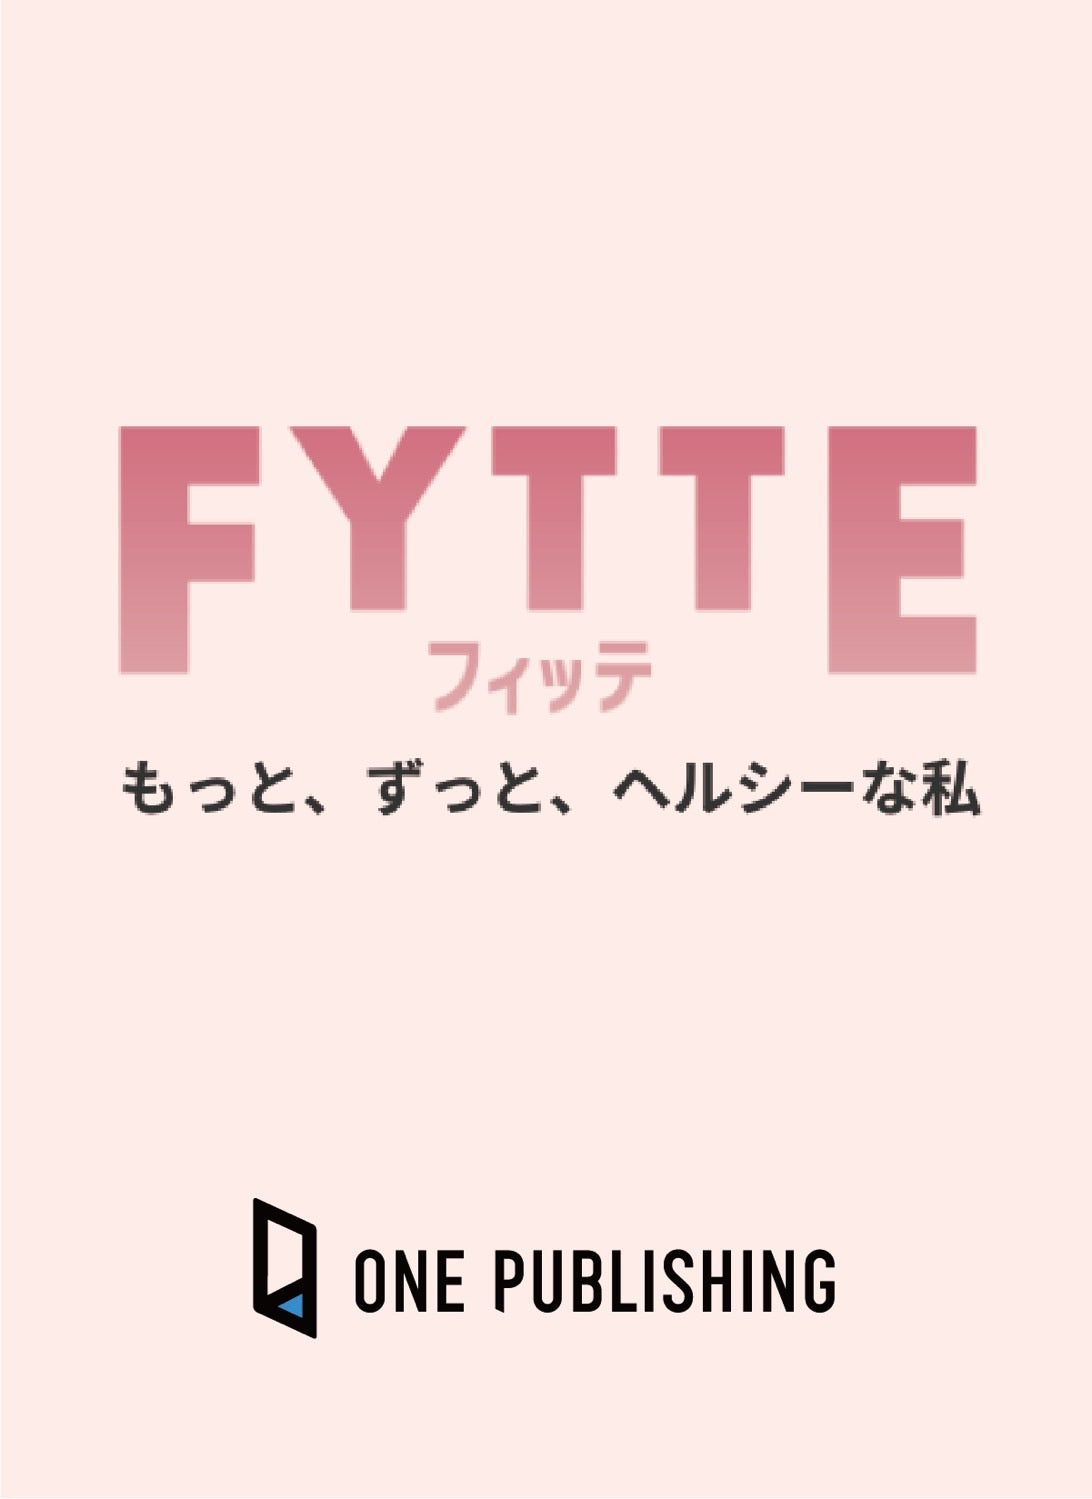 ONE PUBLISHINGウェブメディア「FYTTE」にてご紹介いただきました。